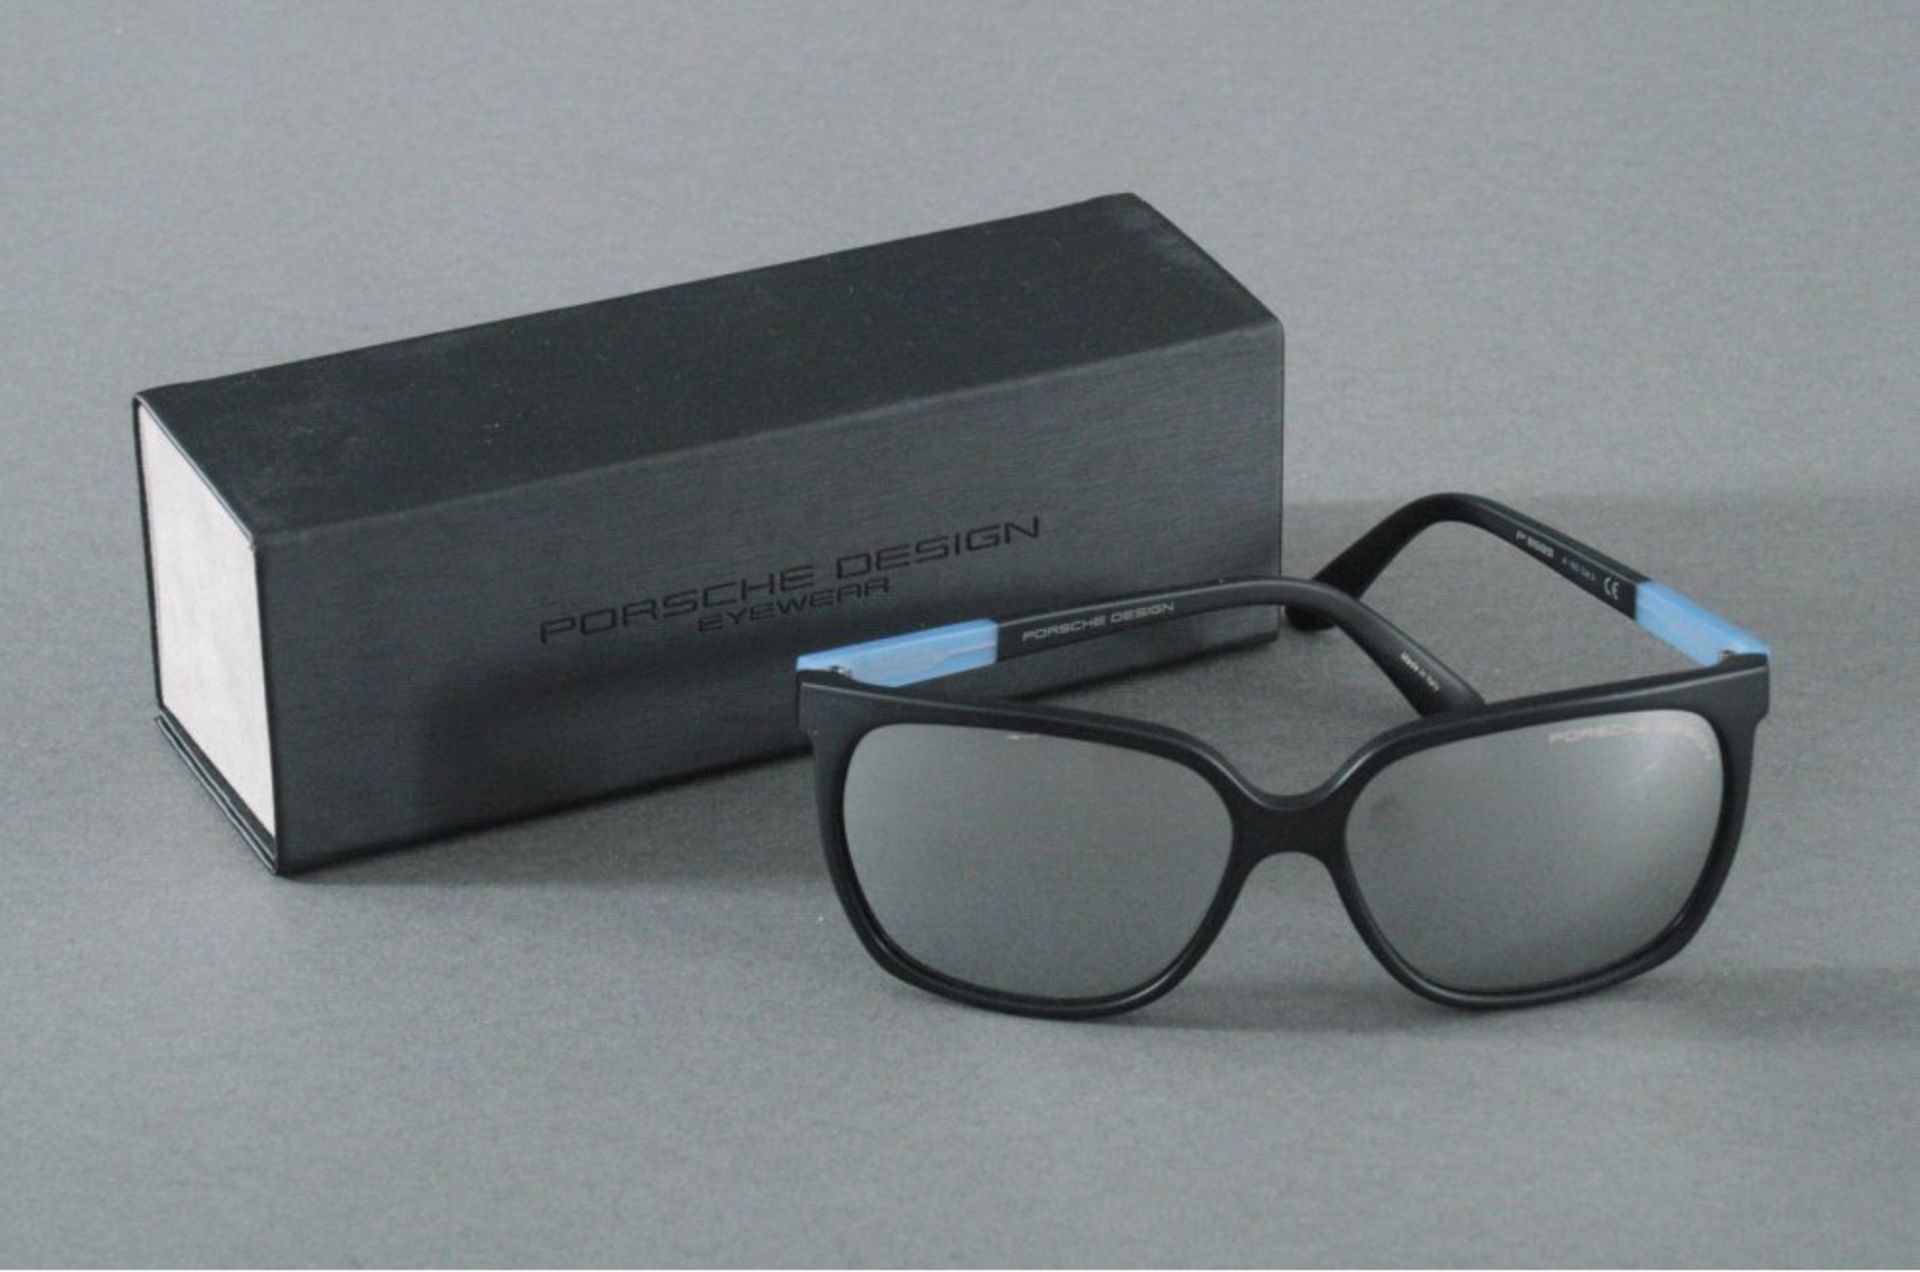 Porsche Design Damensonnenbrille P8589 A, EyewearVerspiegelte Gläser, 135 mm. Neuwertig, im Wert von